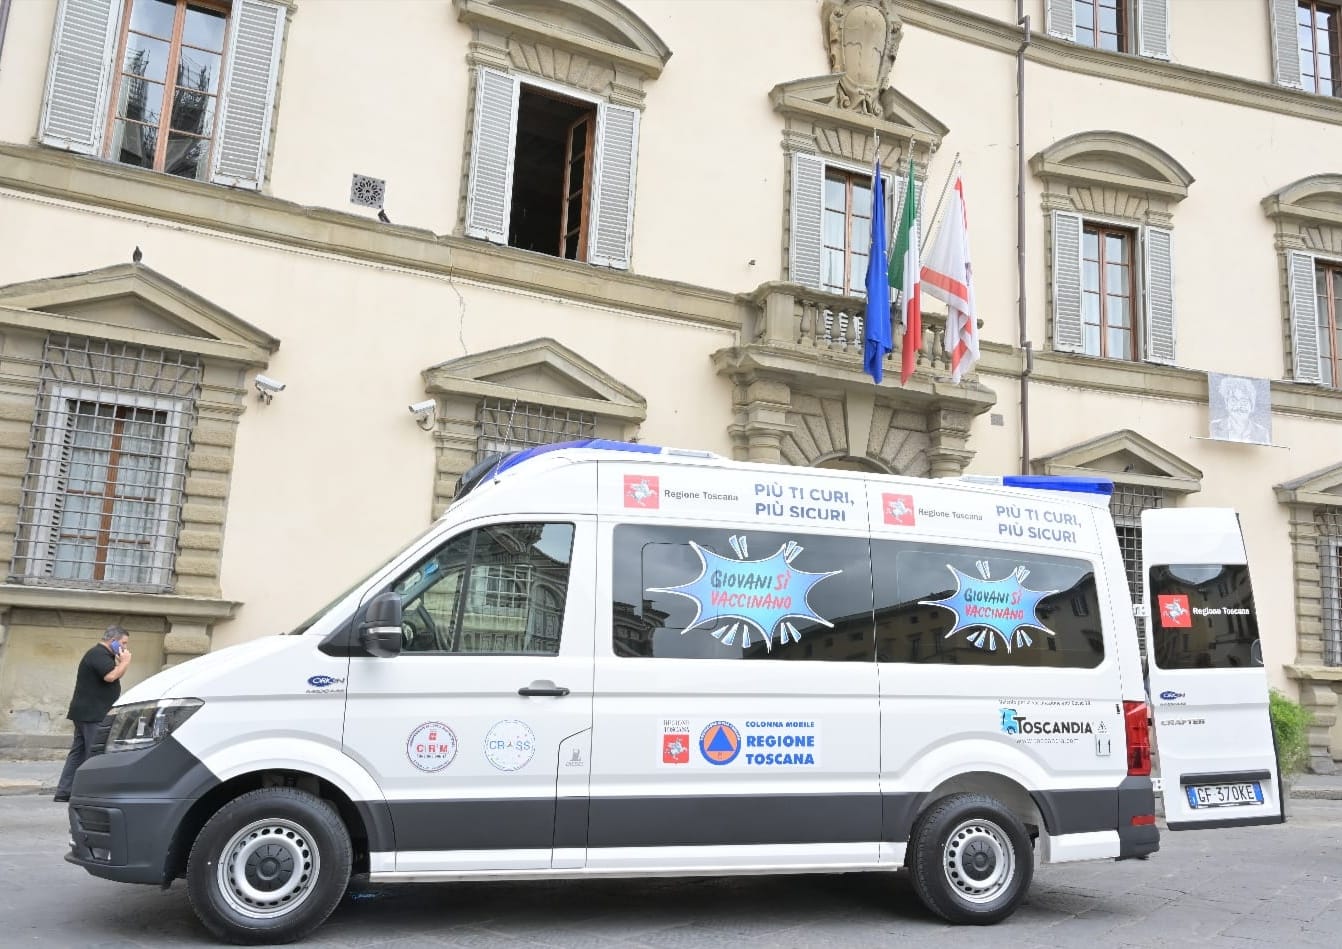 Venerdì il camper vaccinale della Regione Toscana sarà al Terrafino